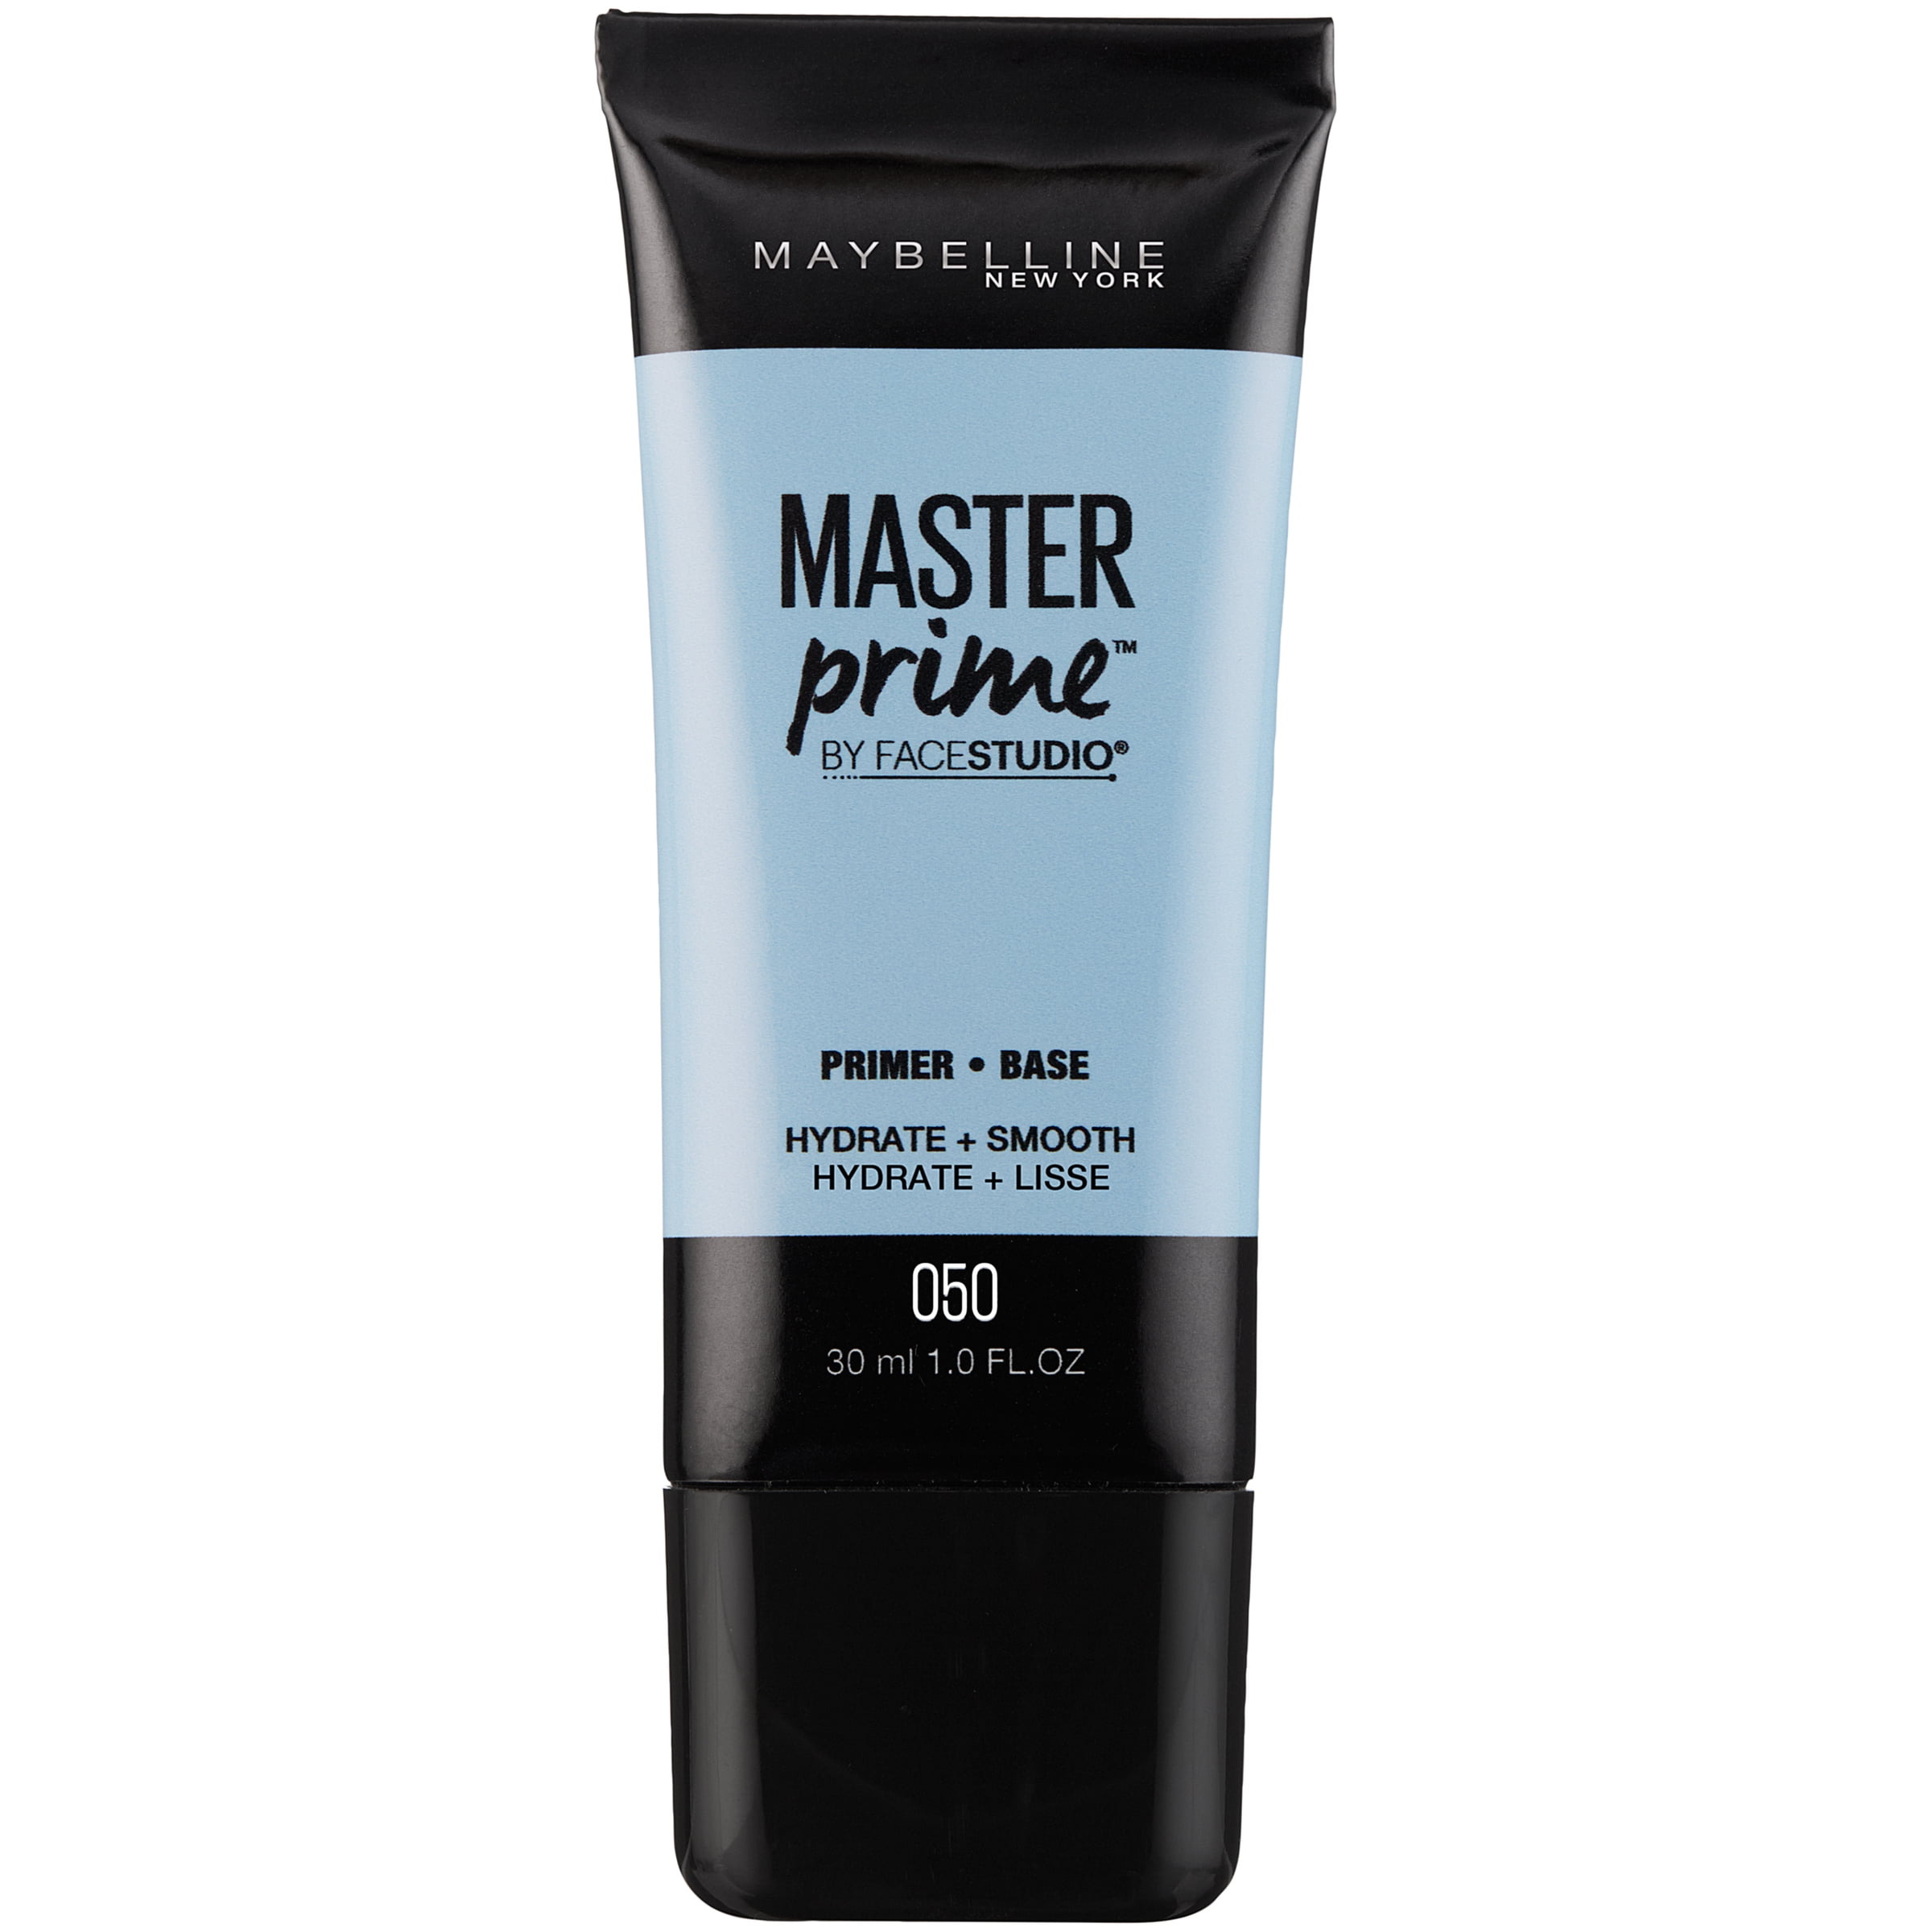 Maybelline Facestudio Master Prime Primer Makeup, Hydrate + Smooth, 1 fl oz